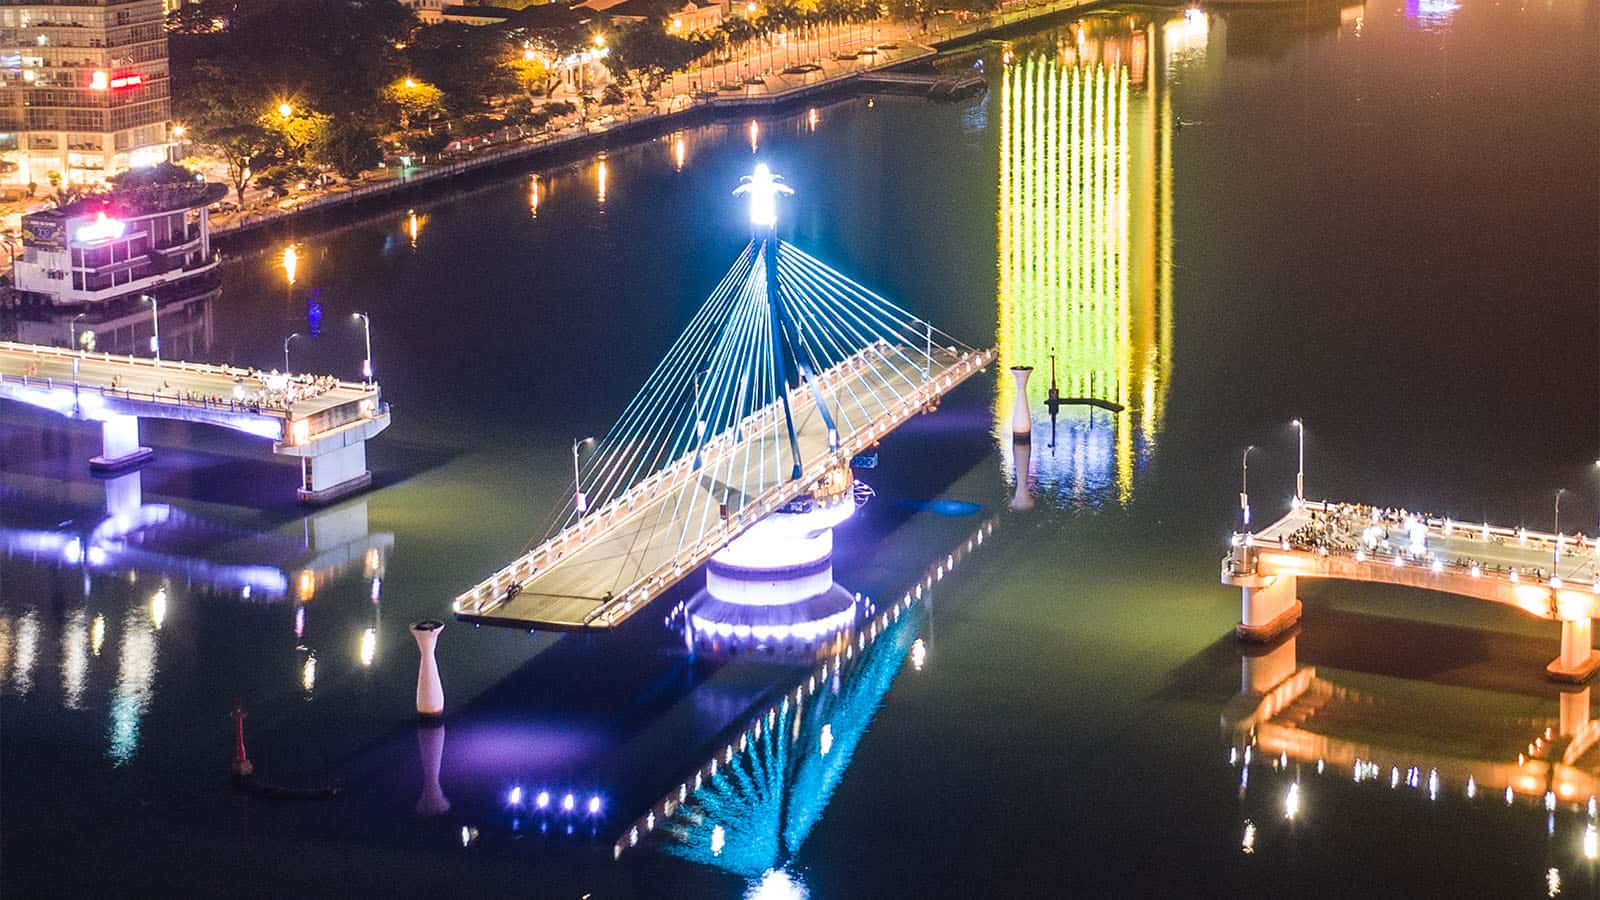 Cầu sông Hàn xoay vào mỗi khuya (Nguồn: Internet).